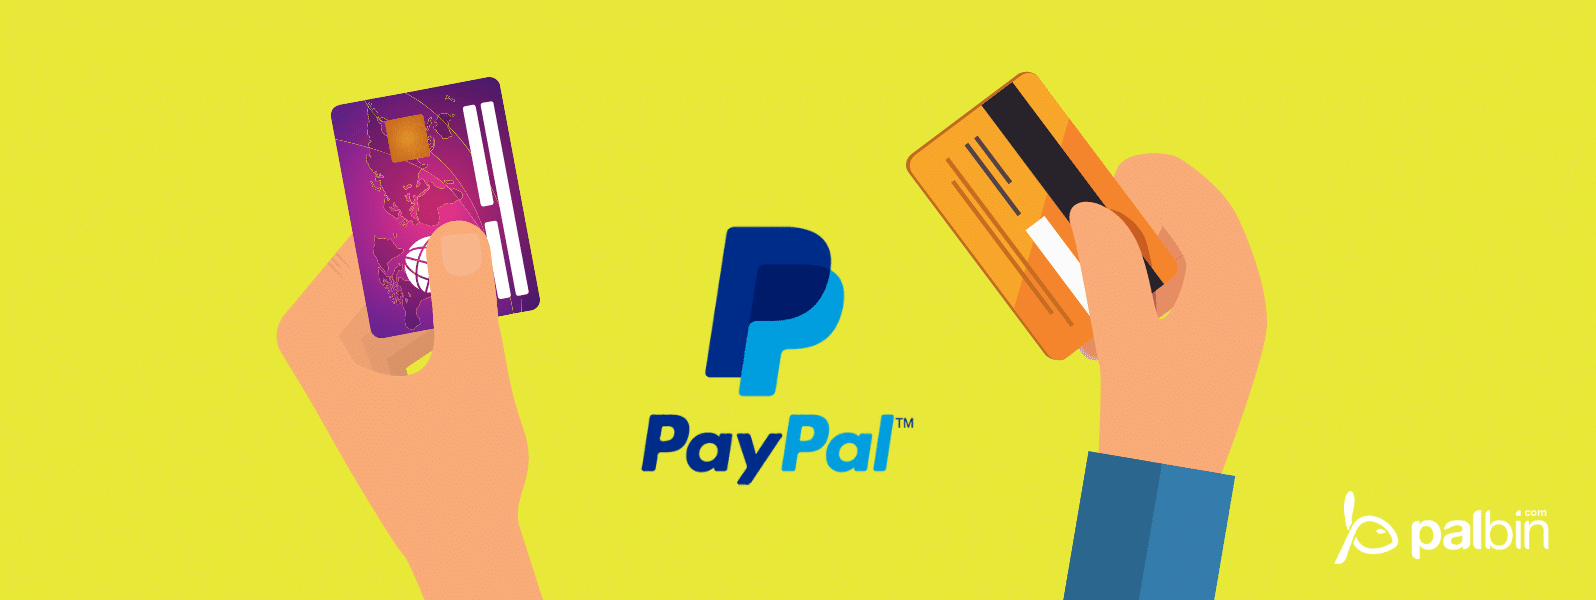 ? Ya se puede pagar con PayPal en las tiendas y comercios físicos (offline)